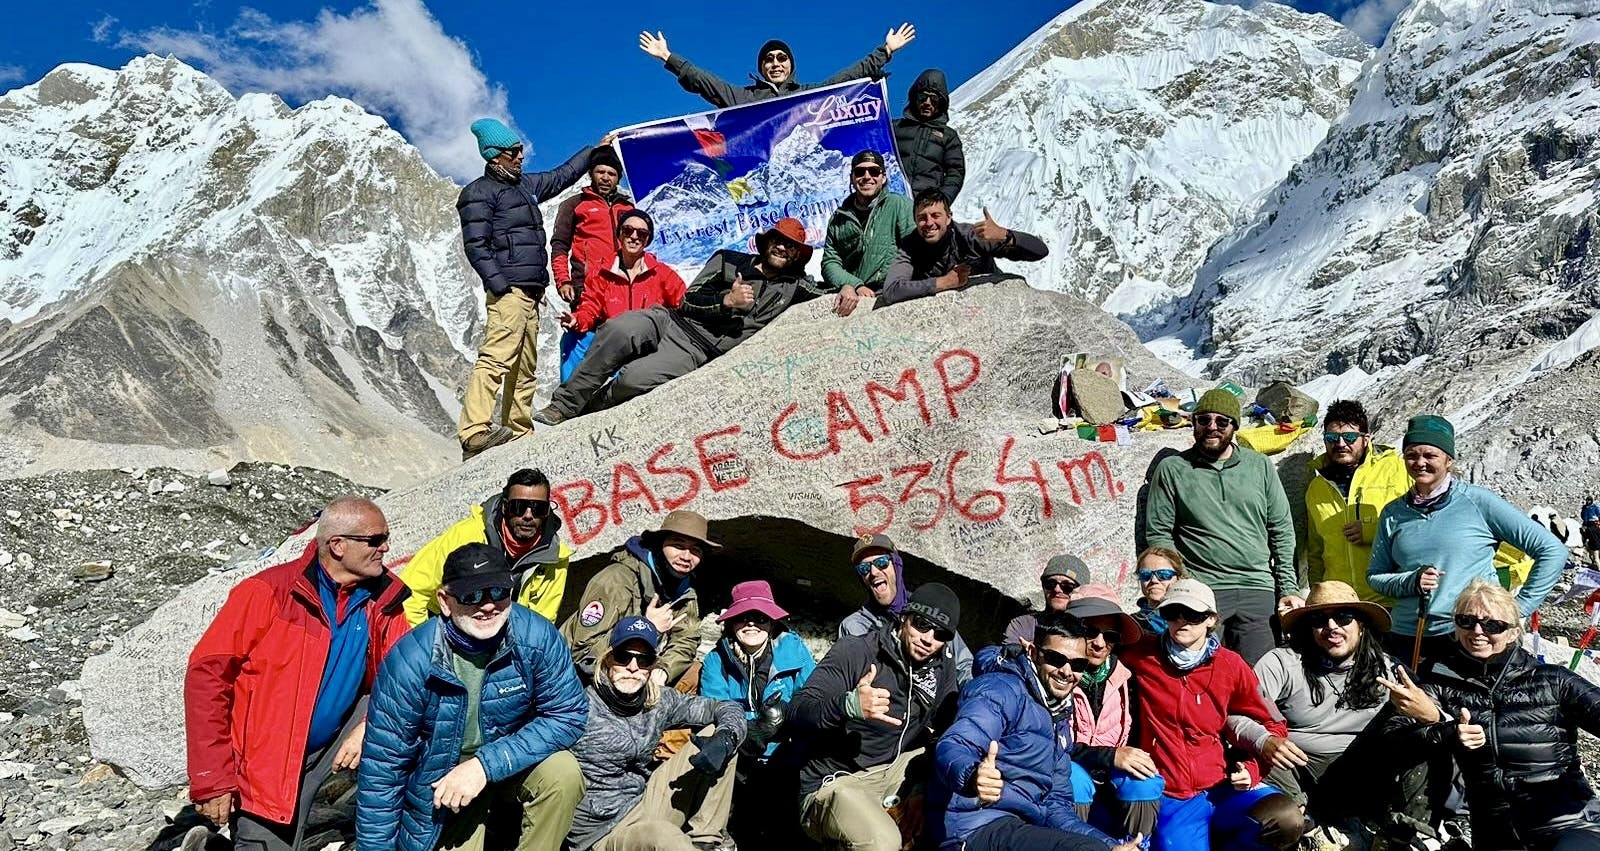 Everest Base Camp Helicopter Return Trek - 10 Days